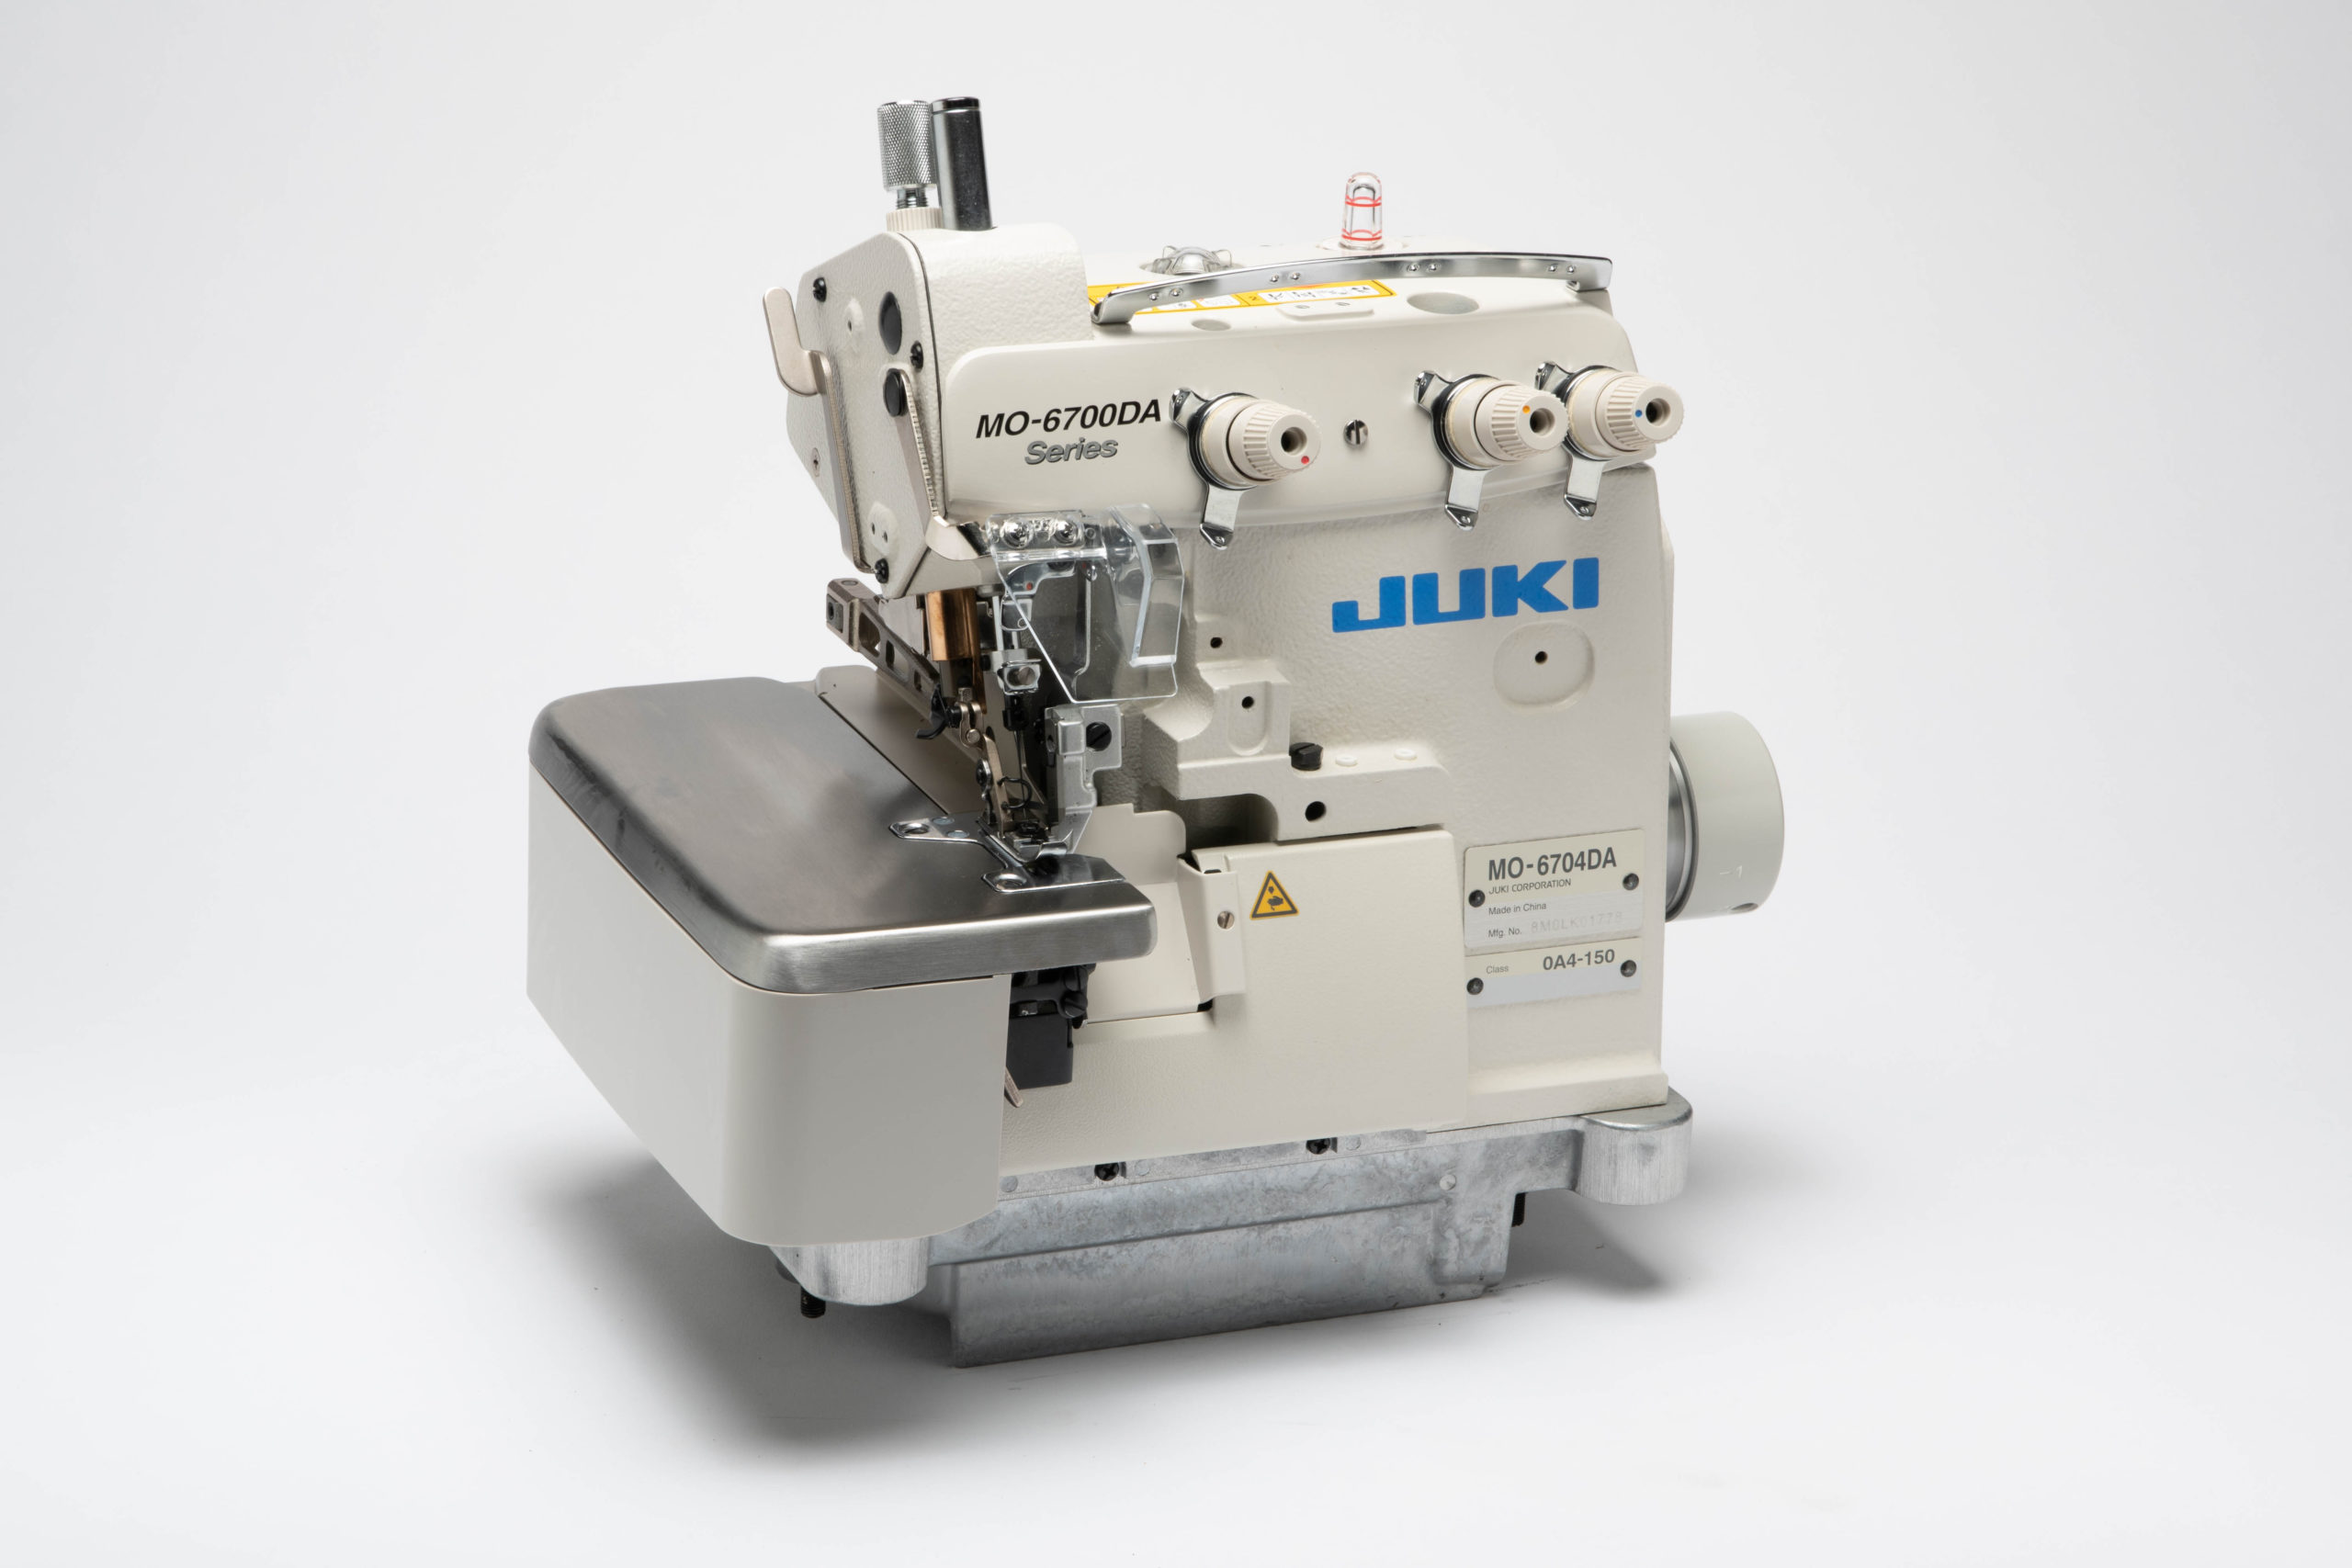 Juki MO-6704DA-0A4-150 - Sewing Gold